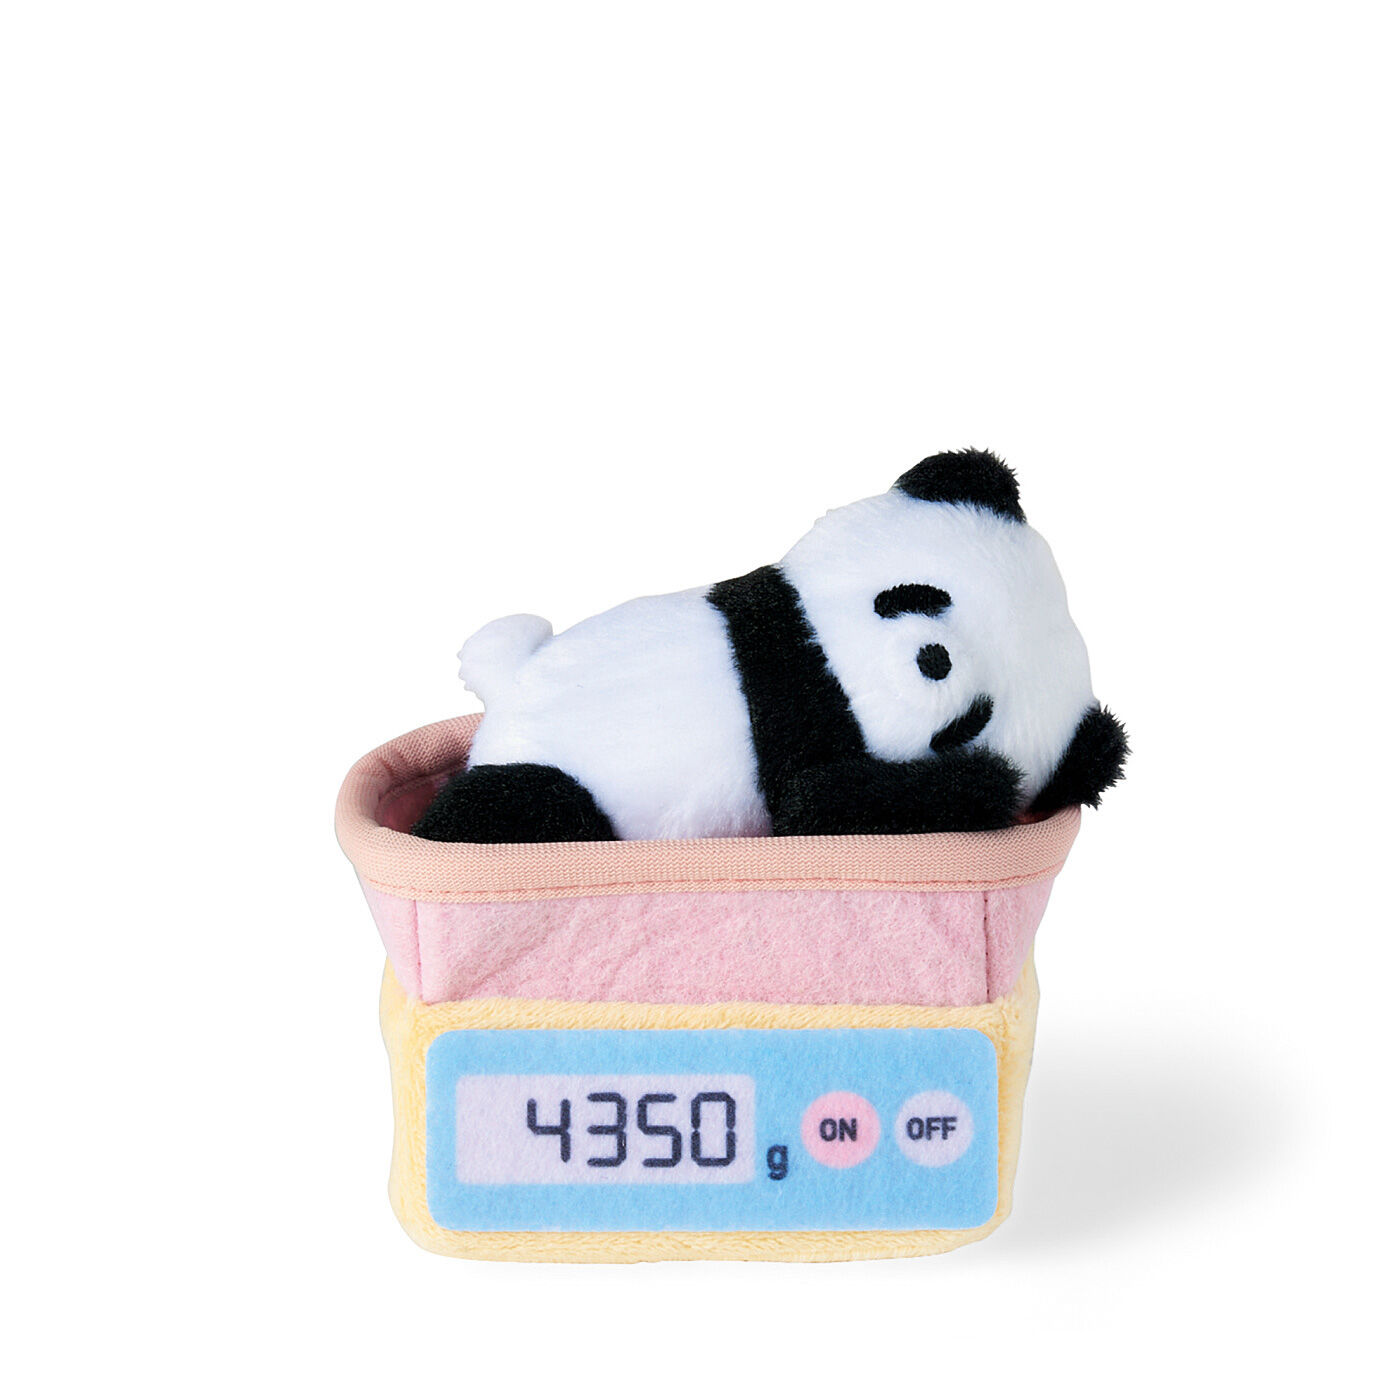 Real Stock|YOU+MORE!　動物園の赤ちゃんたちの体重測定キーマスコット|2:〈赤ちゃんパンダ〉